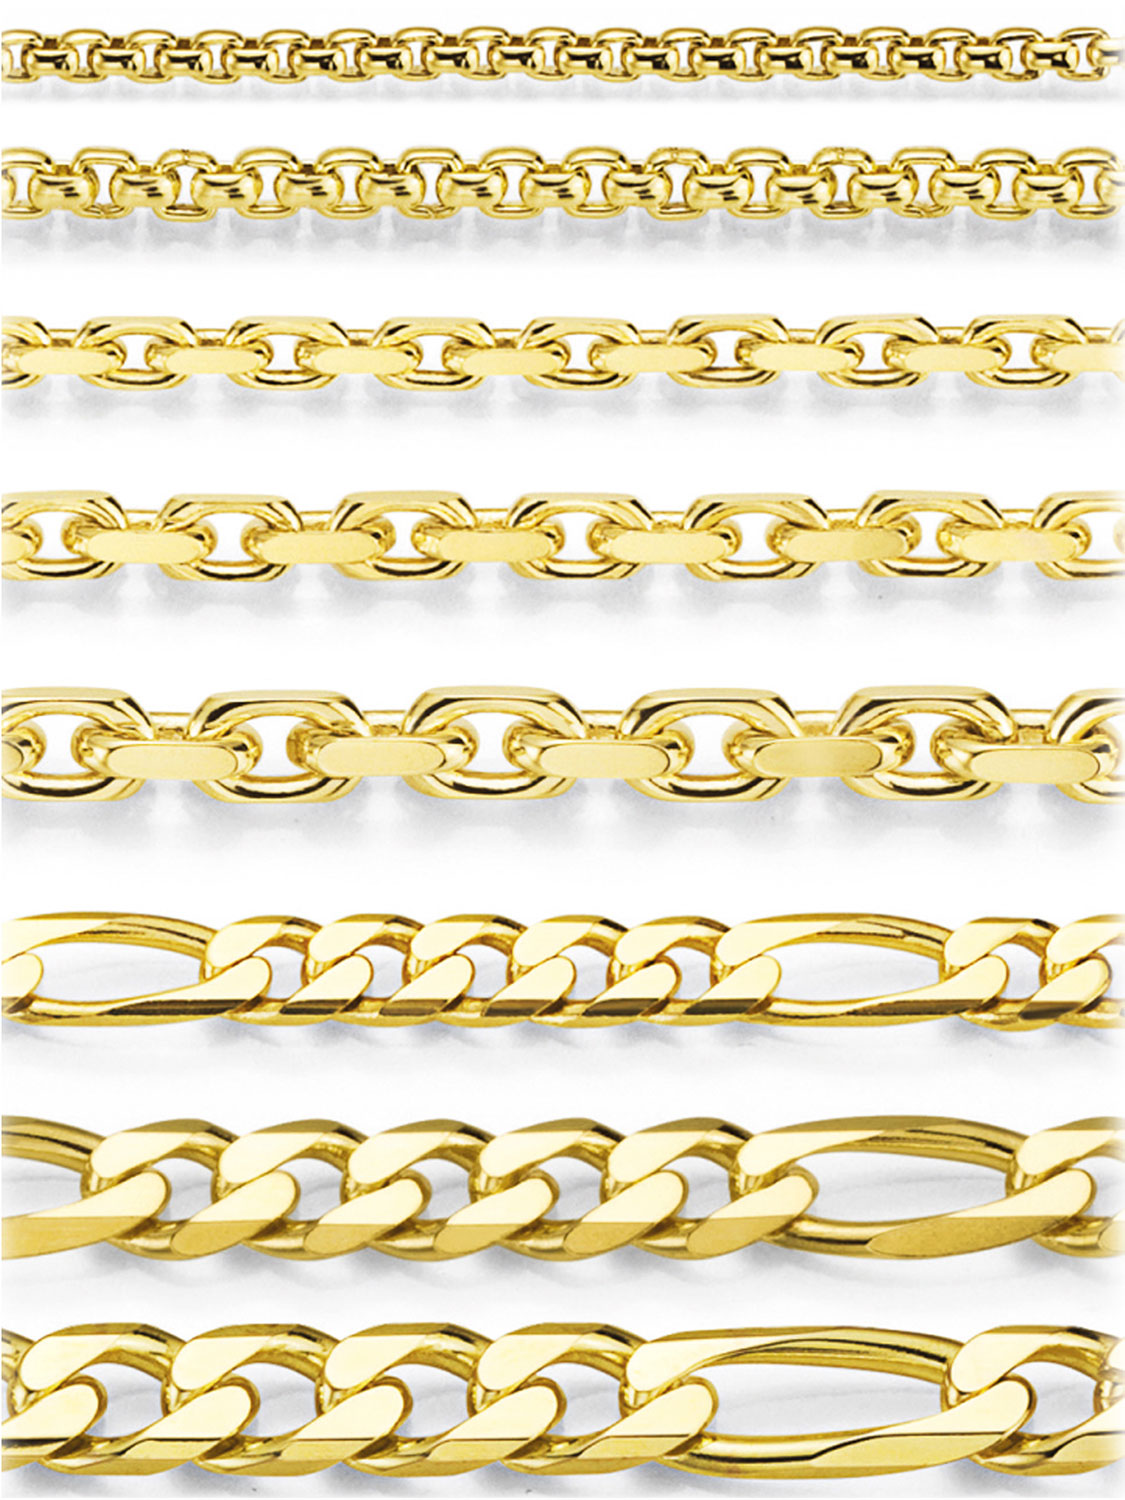 Kordoubt - Halskette 333 Gelbgold Federring - Breite 1,5 mm Länge 38 cm